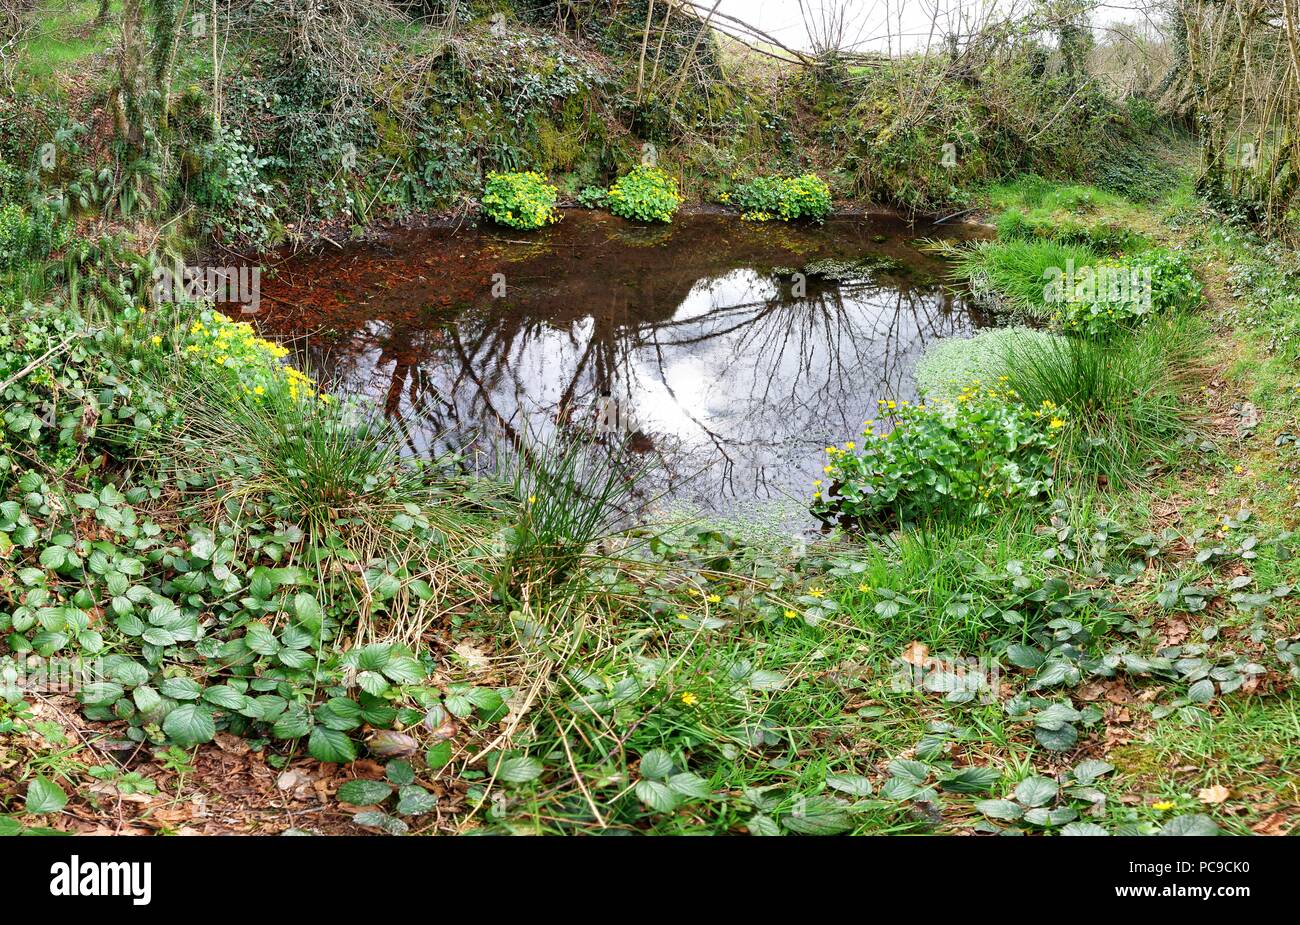 Pond in informal bog garden, private garden of British expatriates, Brittany Stock Photo